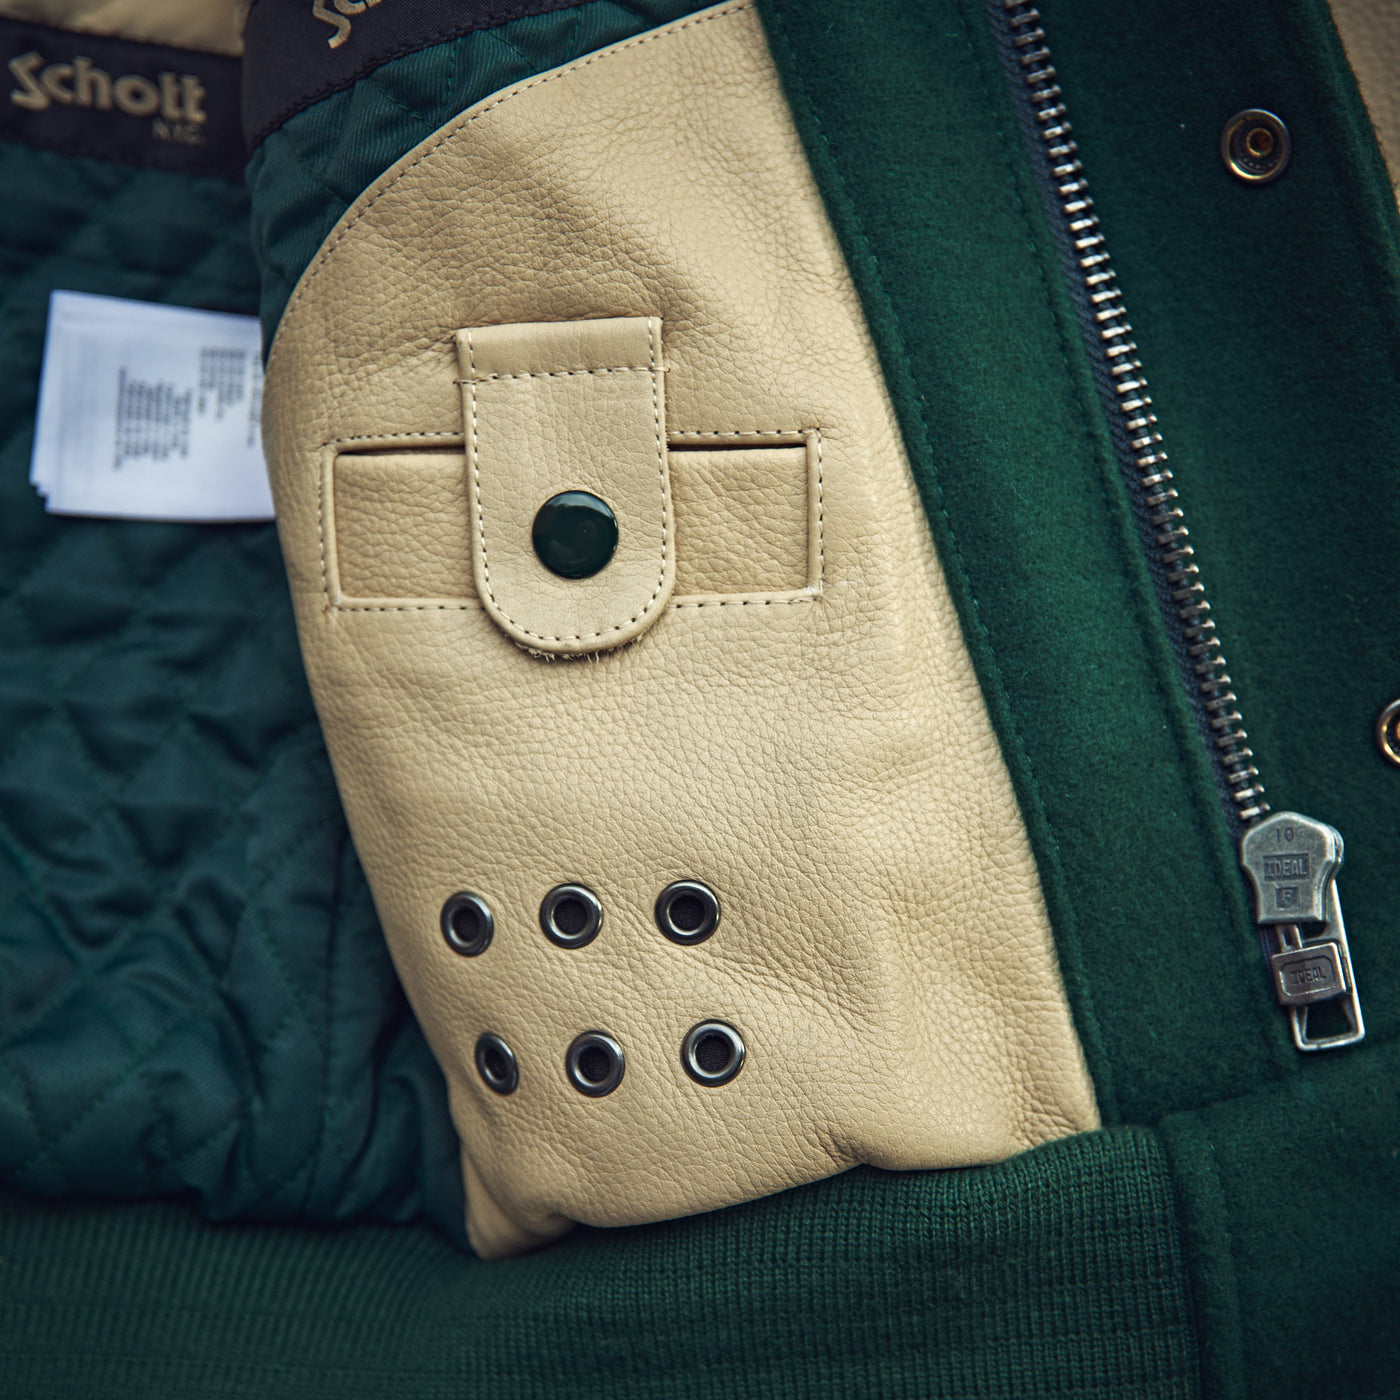 Schott N.Y. - Varsity Jacket Cowhide/Wool  - Green/Beige